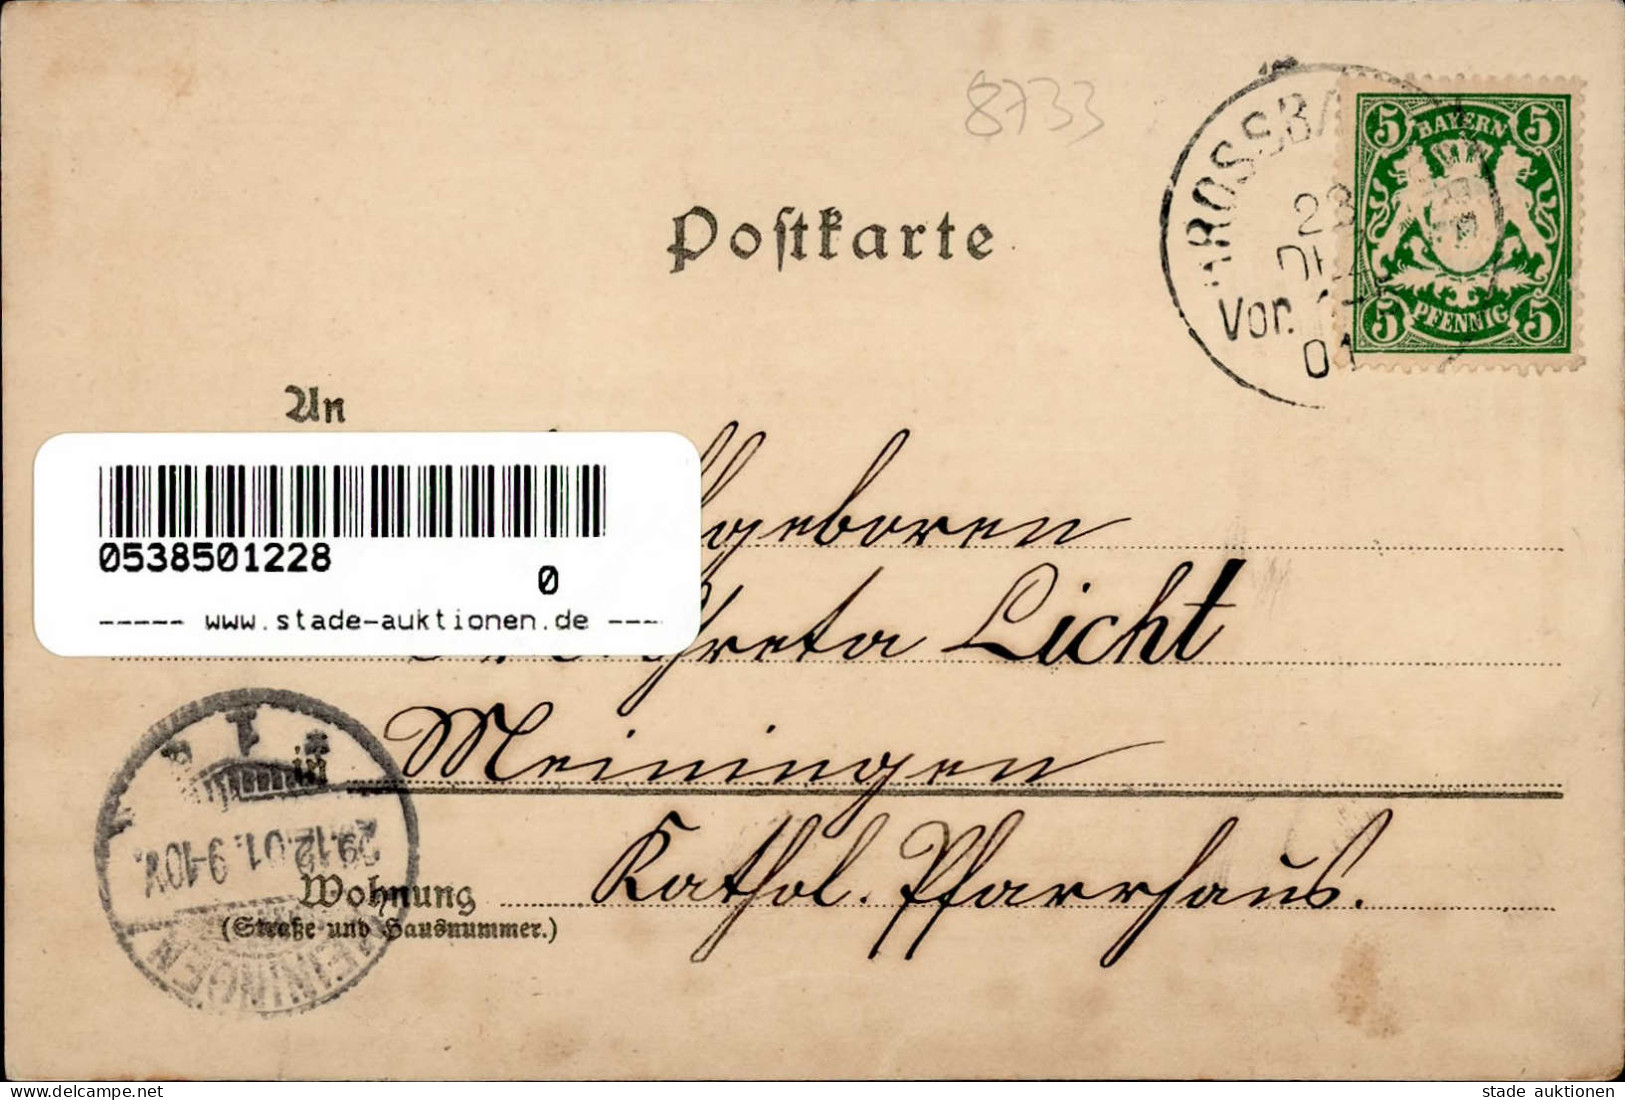 Bad Bocklet (8733) 1901 I-II - Bad Kissingen